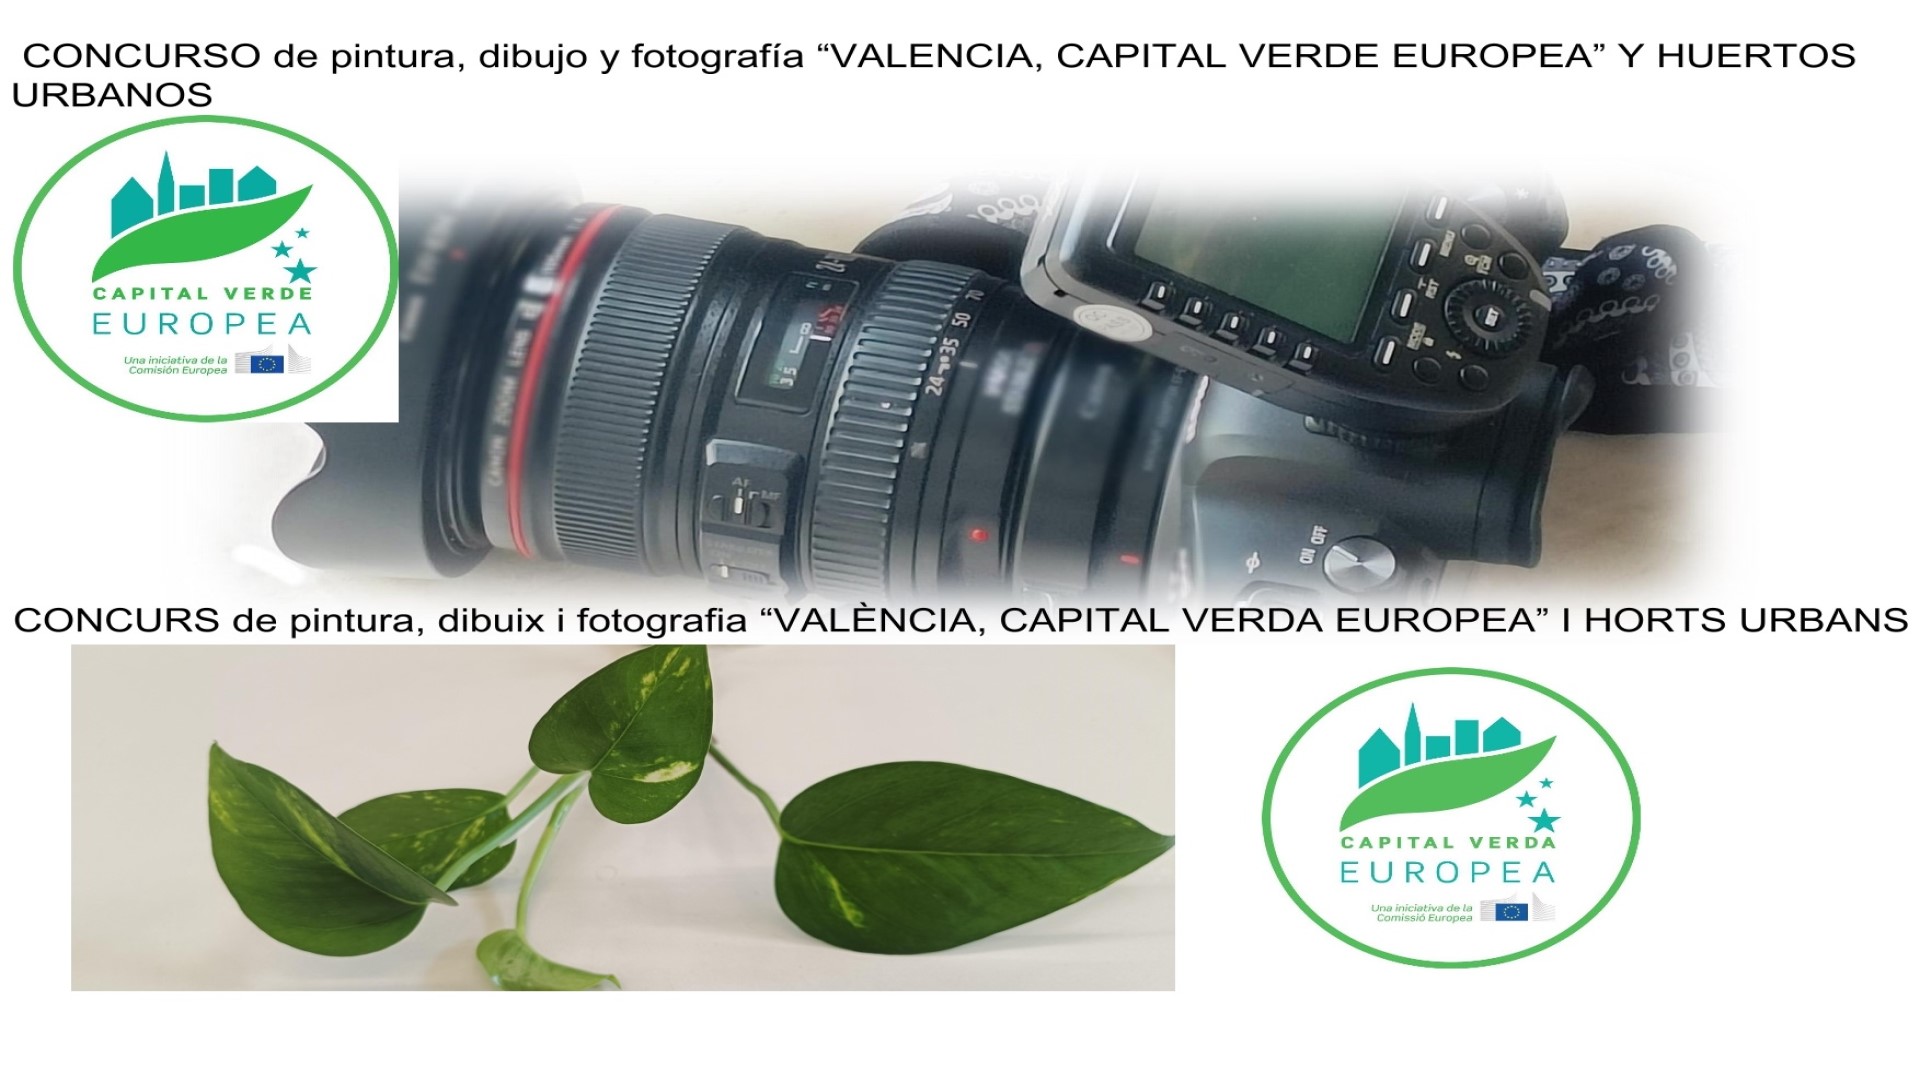 Concurso València, Capital Verde Europea y huertos urbanos